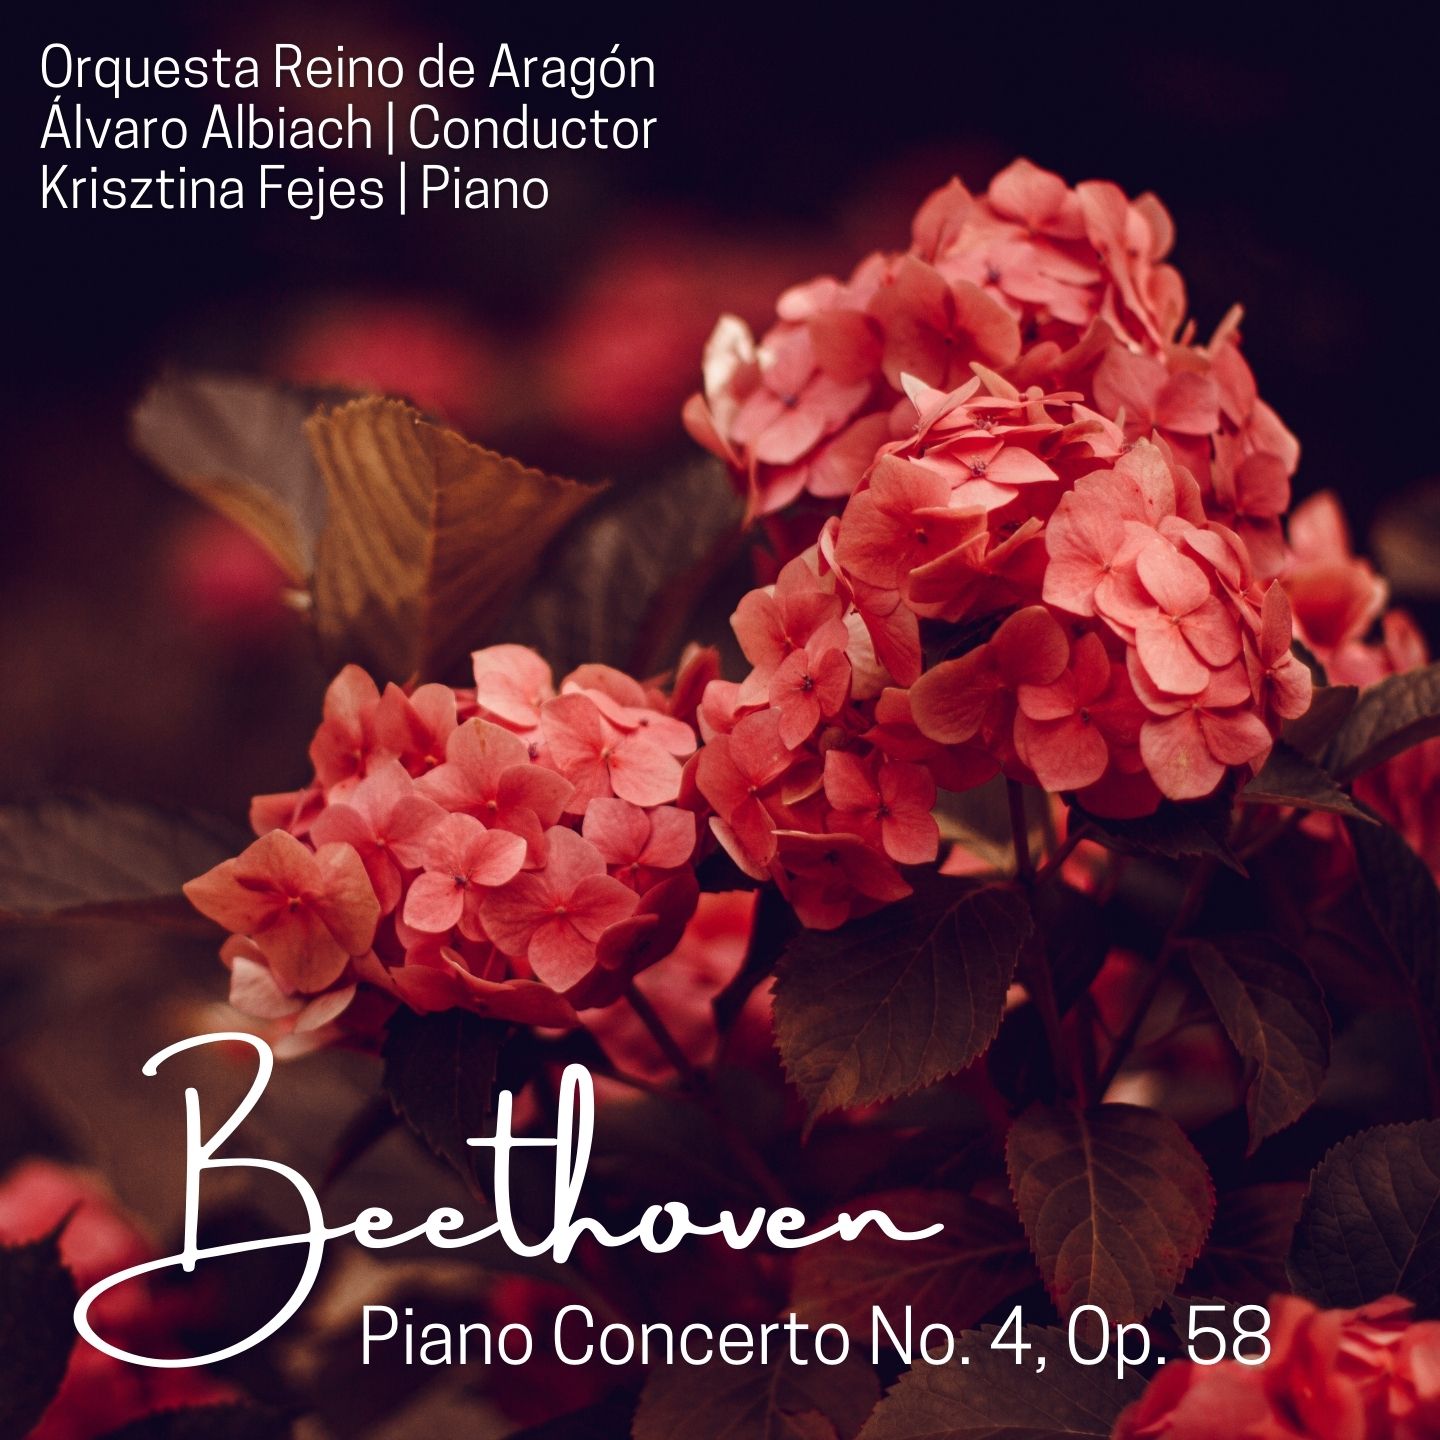 Beethoven: Piano Concerto No. 4, Op. 58